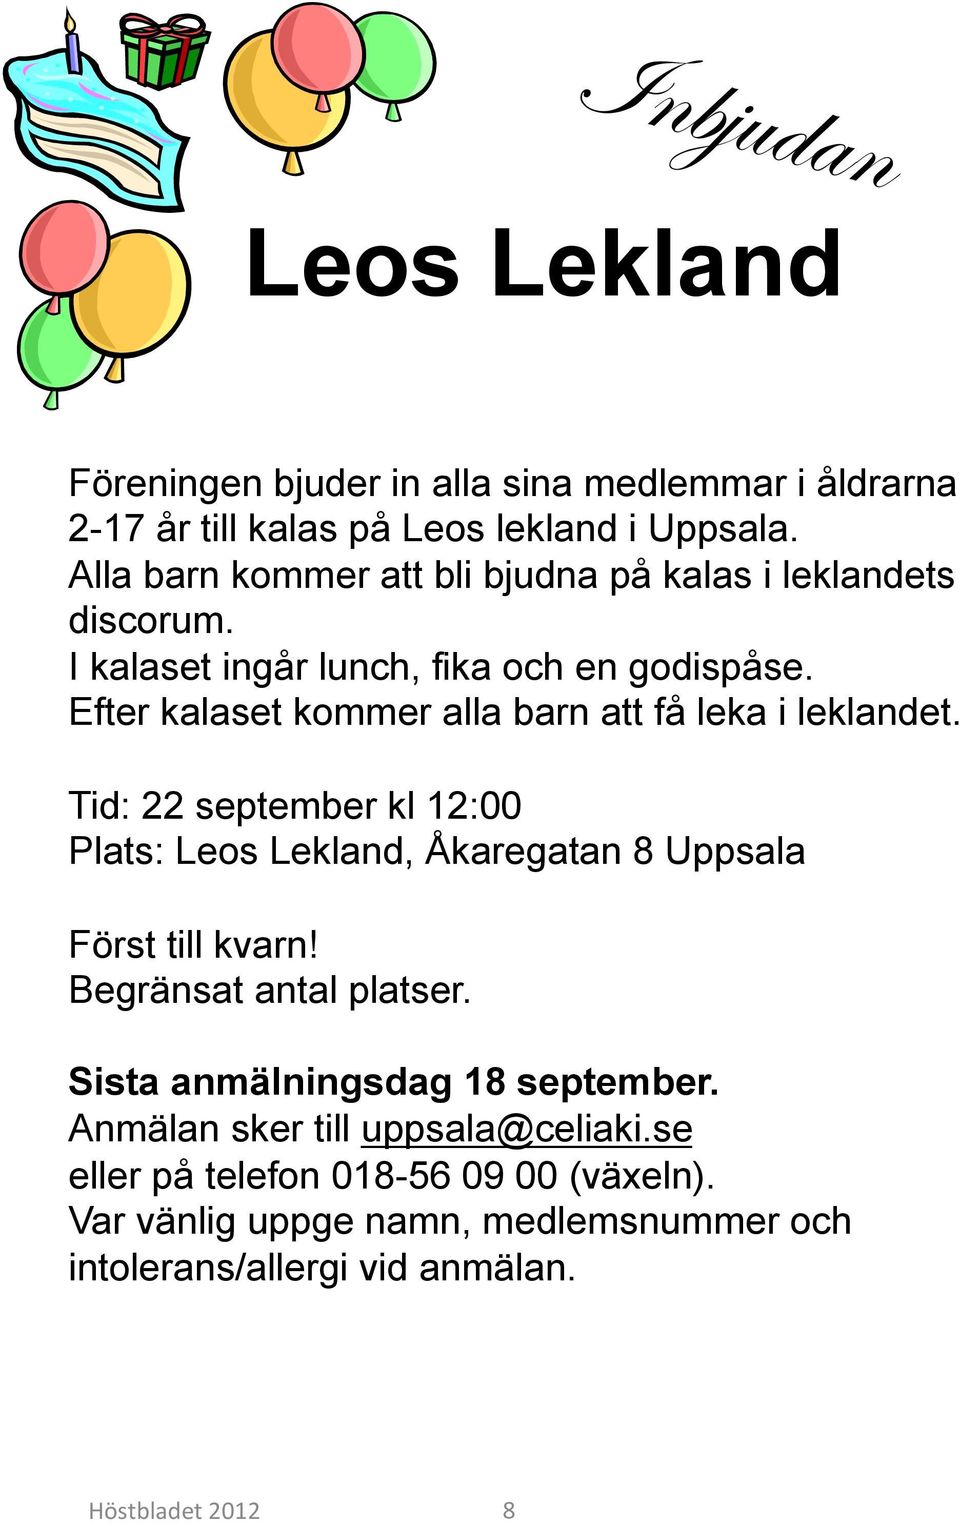 Efter kalaset kommer alla barn att få leka i leklandet. Tid: 22 september kl 12:00 Plats: Leos Lekland, Åkaregatan 8 Uppsala Först till kvarn!